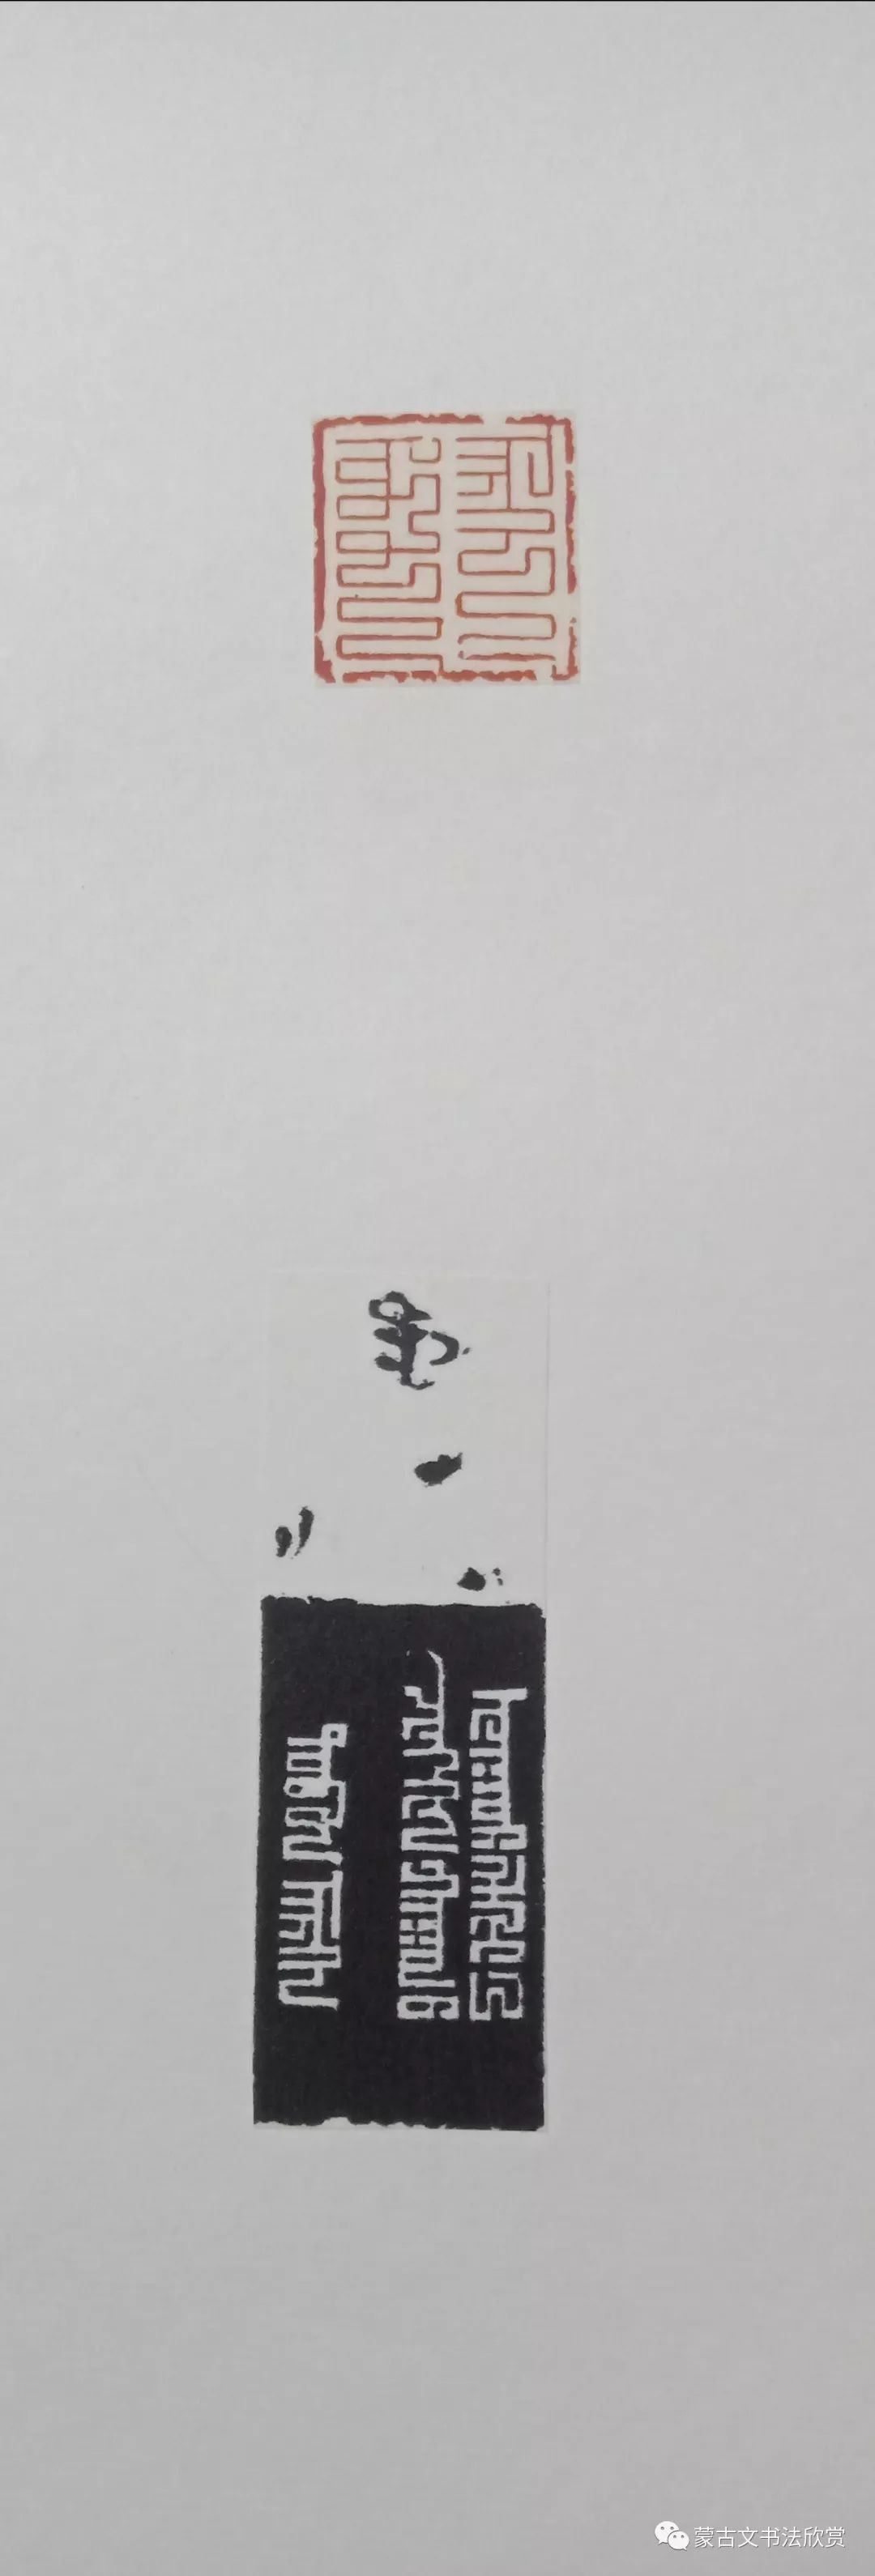 蒙古文书法欣赏——白七斤半 第15张